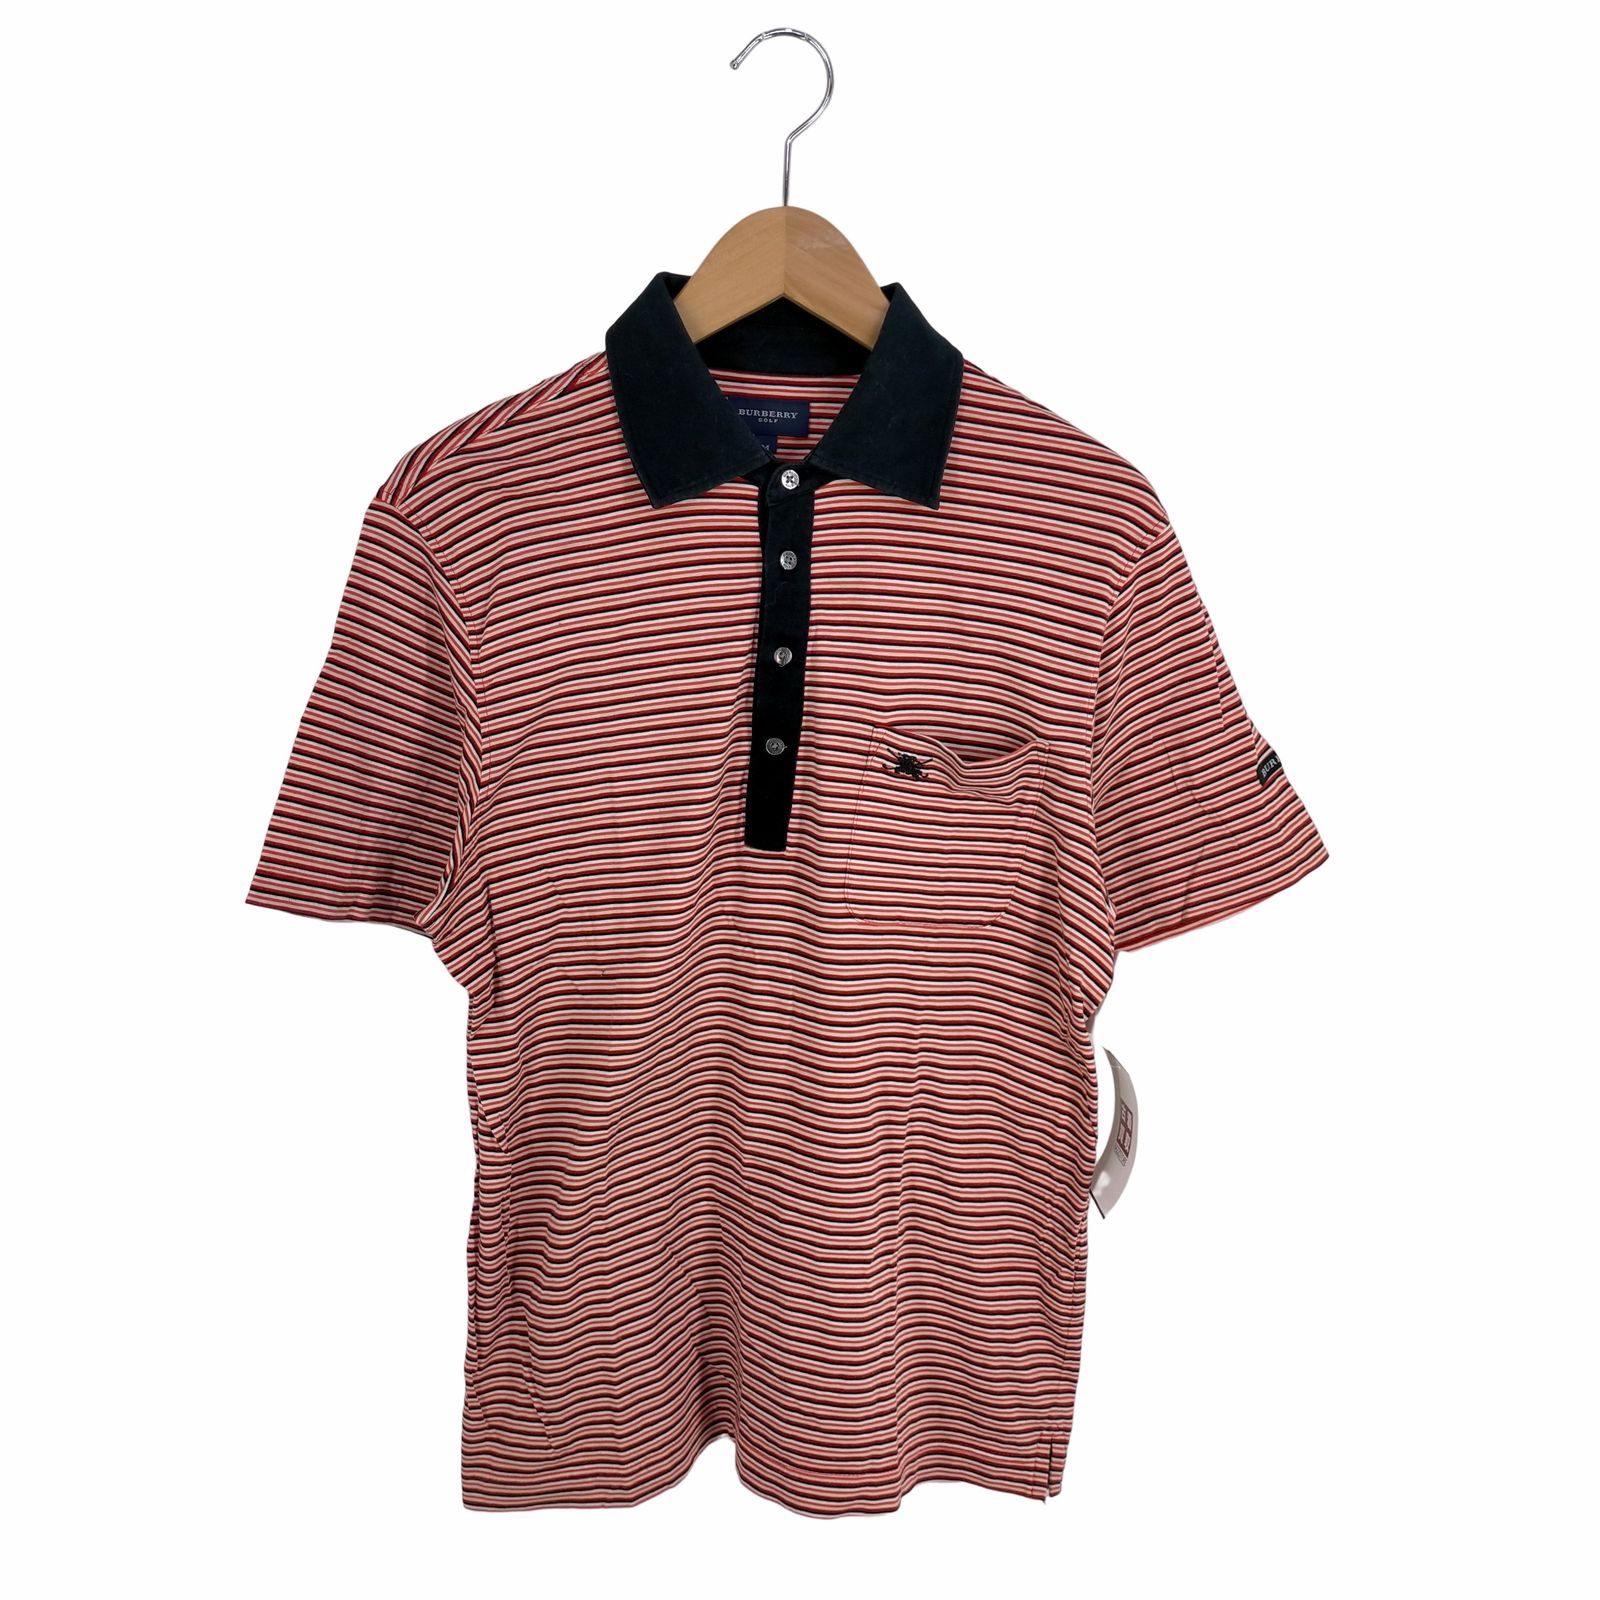 バーバリーゴルフ BURBERRY GOLF ロゴ刺繍ボーダーポロシャツ メンズ M 